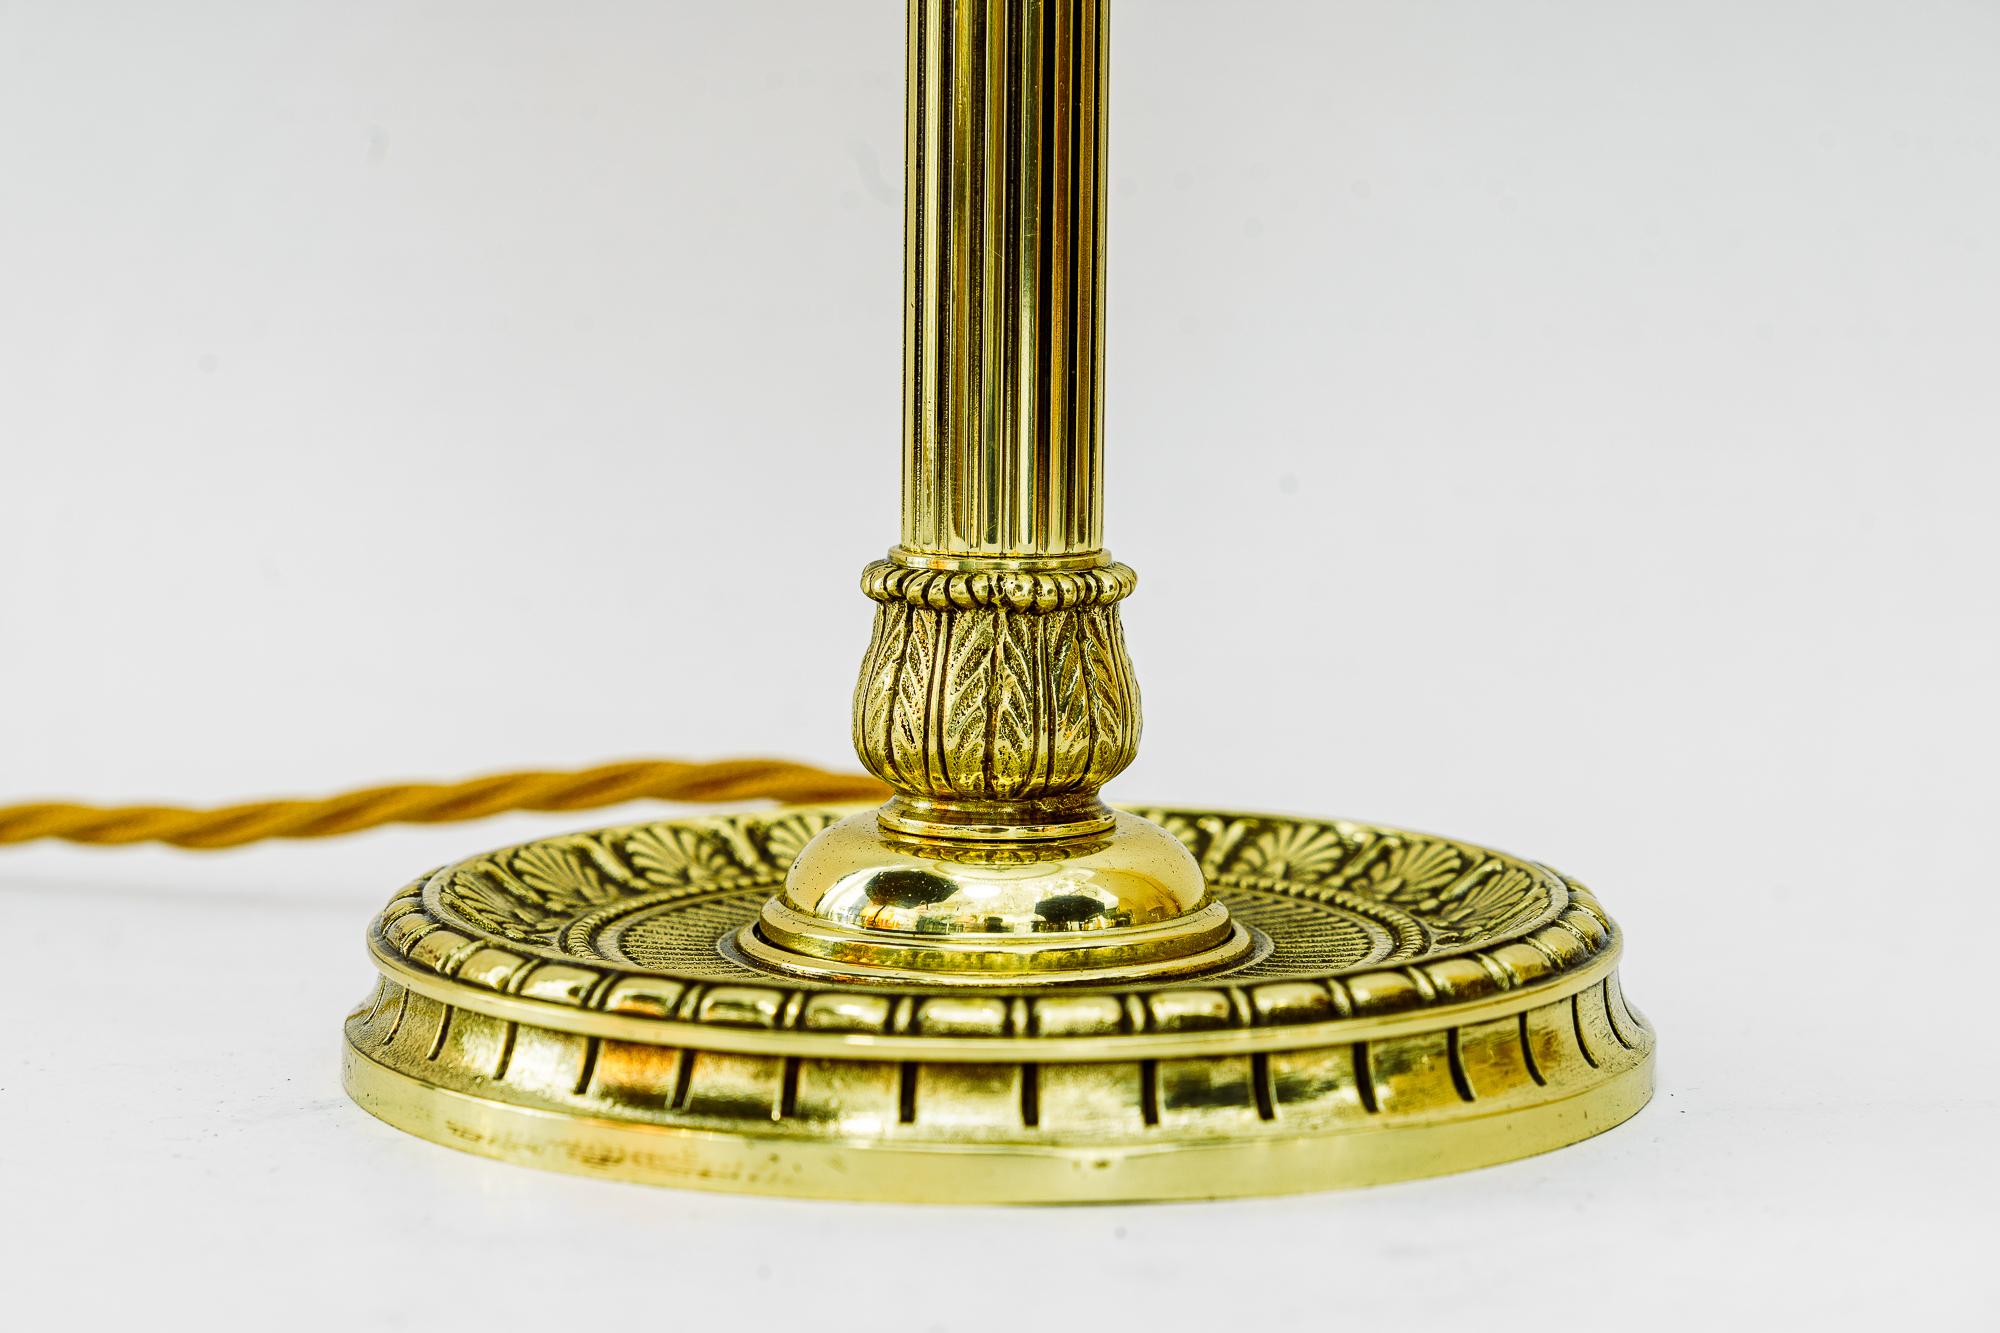 Art Deco Tischlampe wien um 1920 
Messing poliert und emailliert
Original-Antikglas-Schirm
Die Glasstäbe werden ersetzt ( neu )